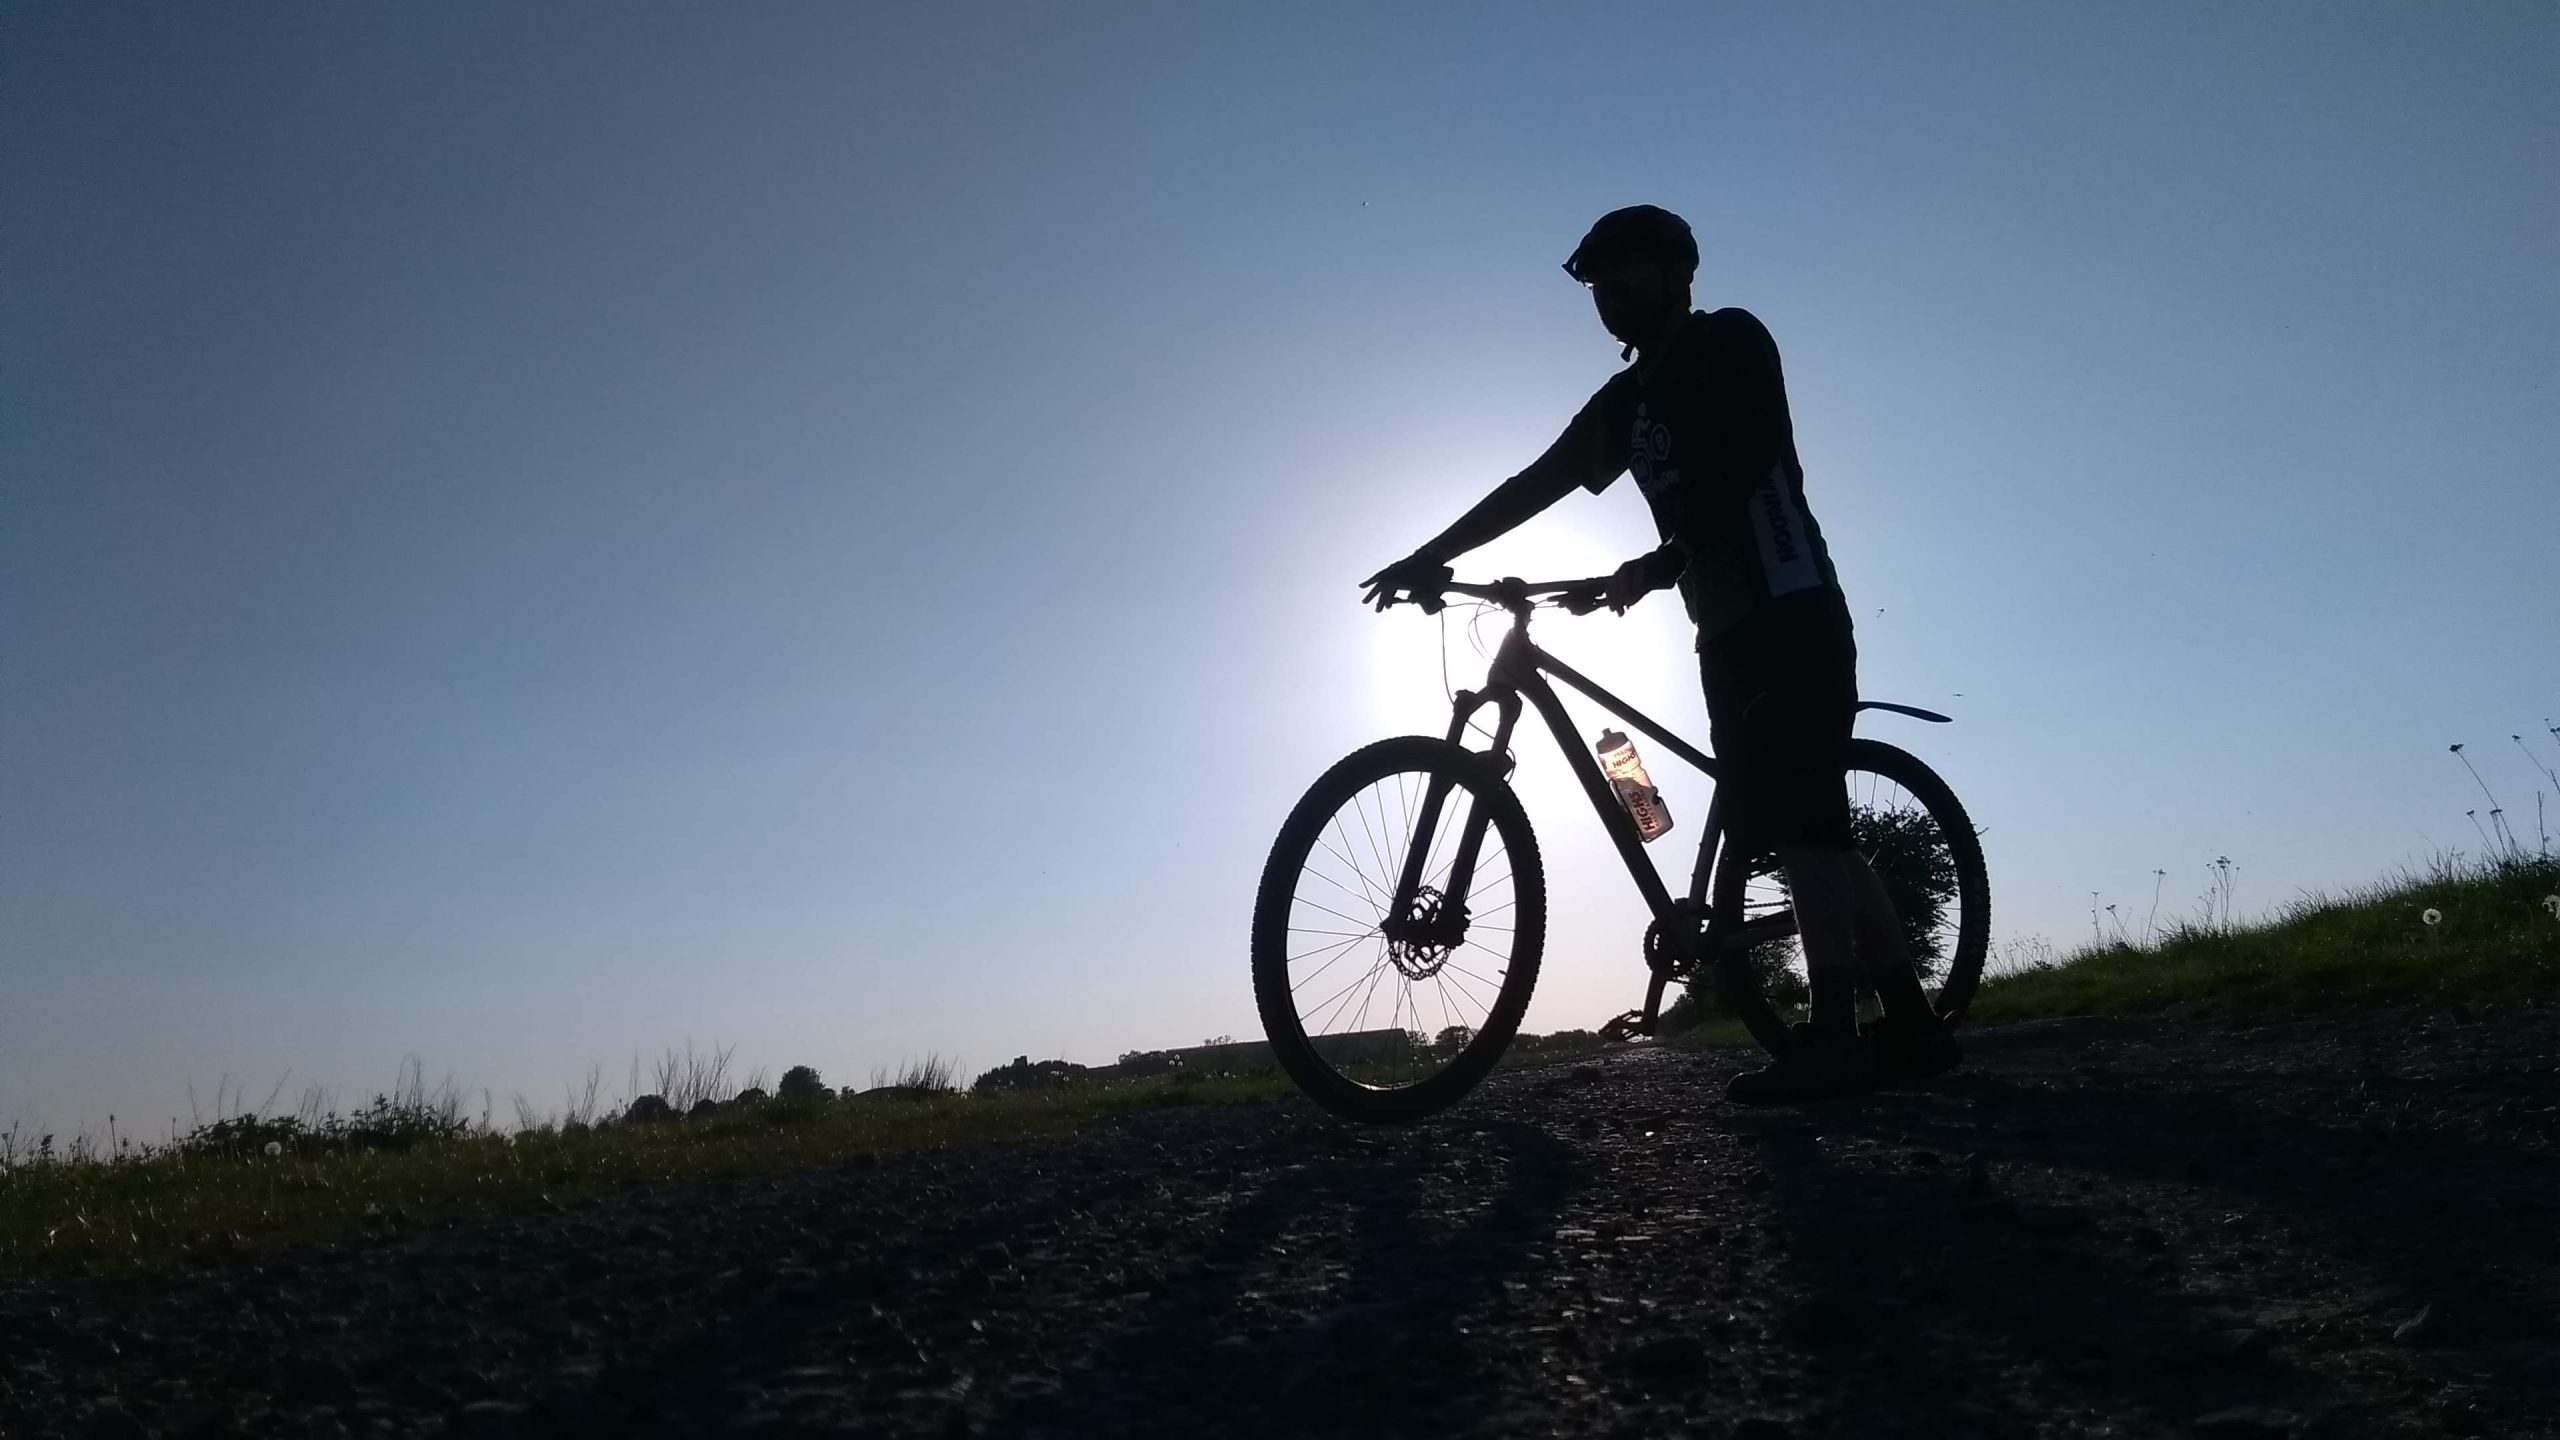 Mountain biker in silhouette